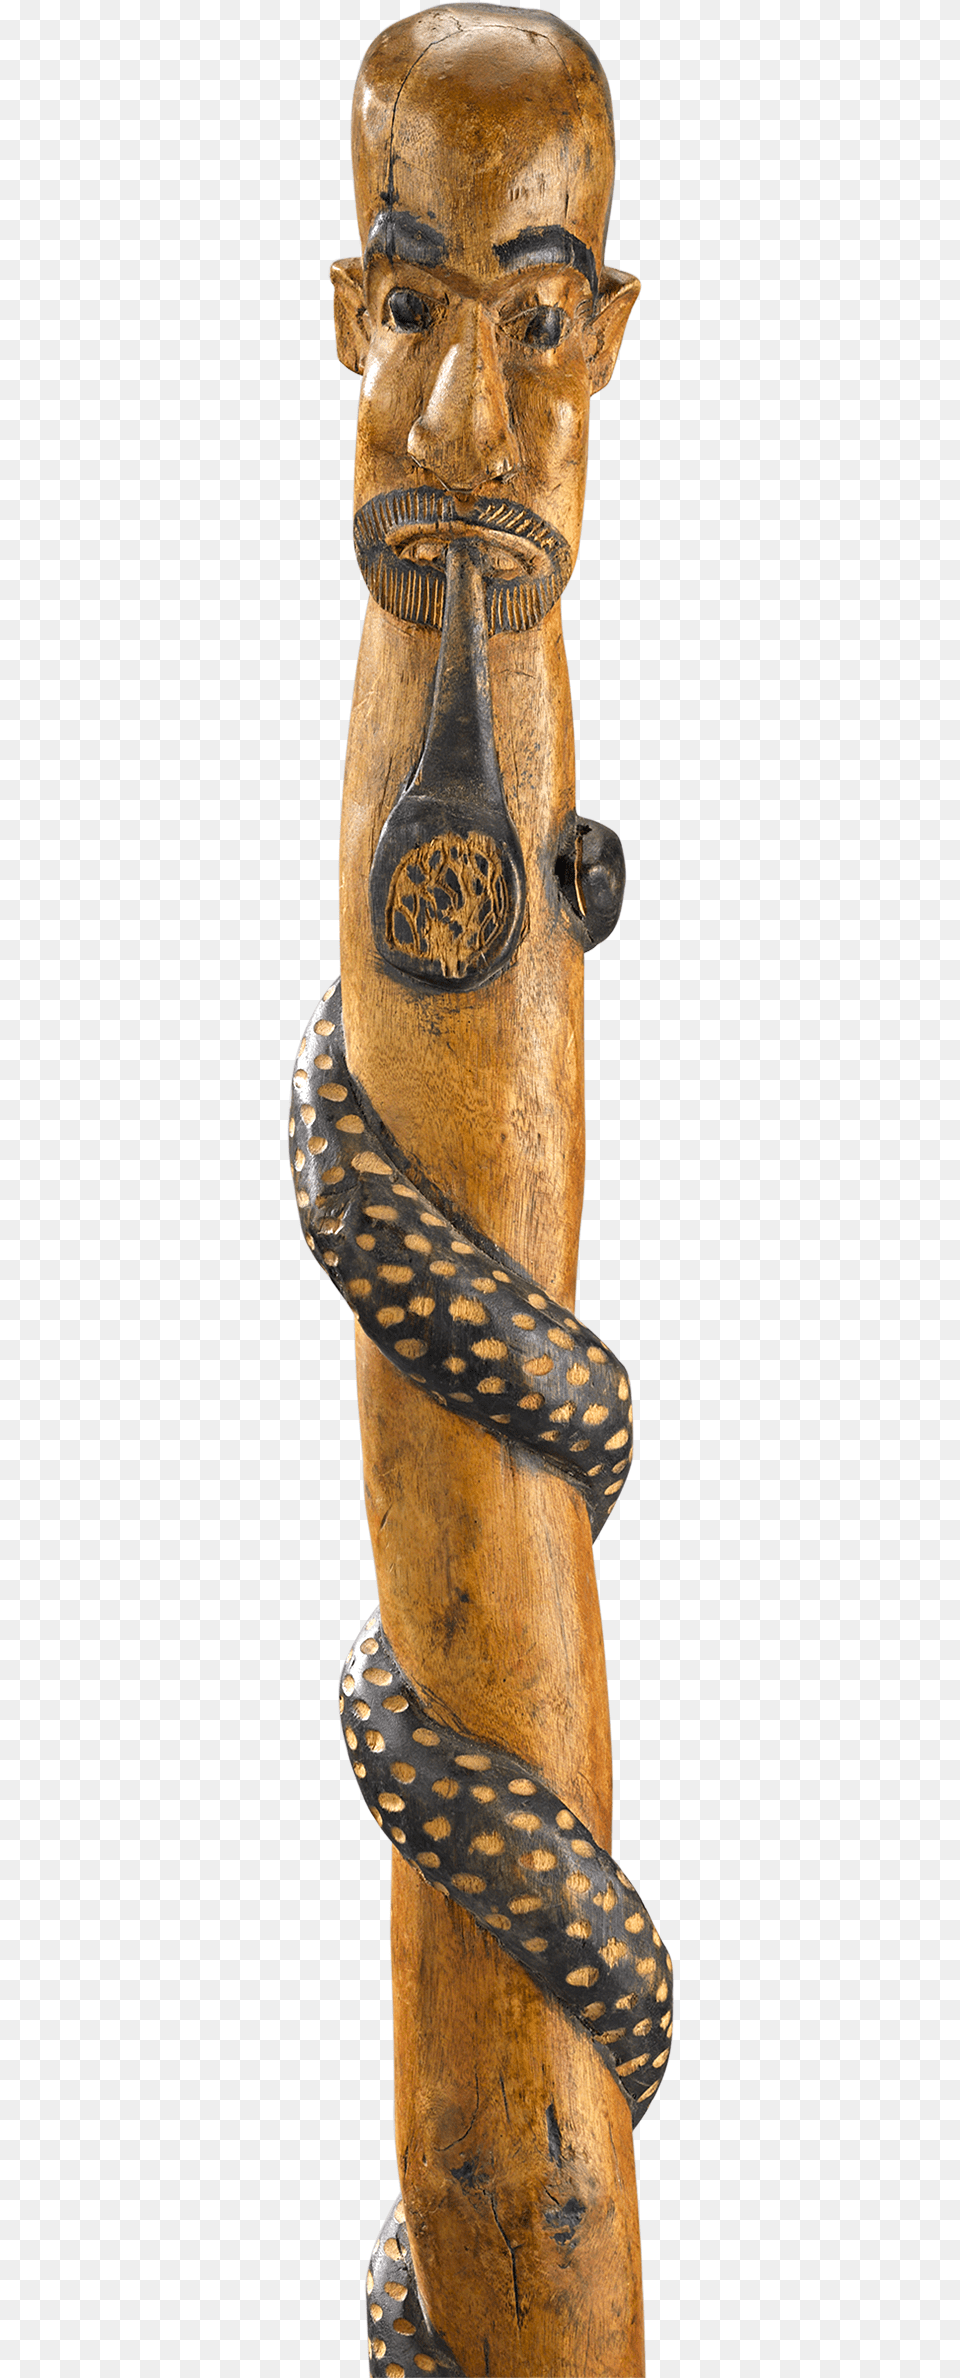 Indian Snake Charmer Folk Art Cane Carving, Symbol, Emblem, Adult, Person Free Png Download